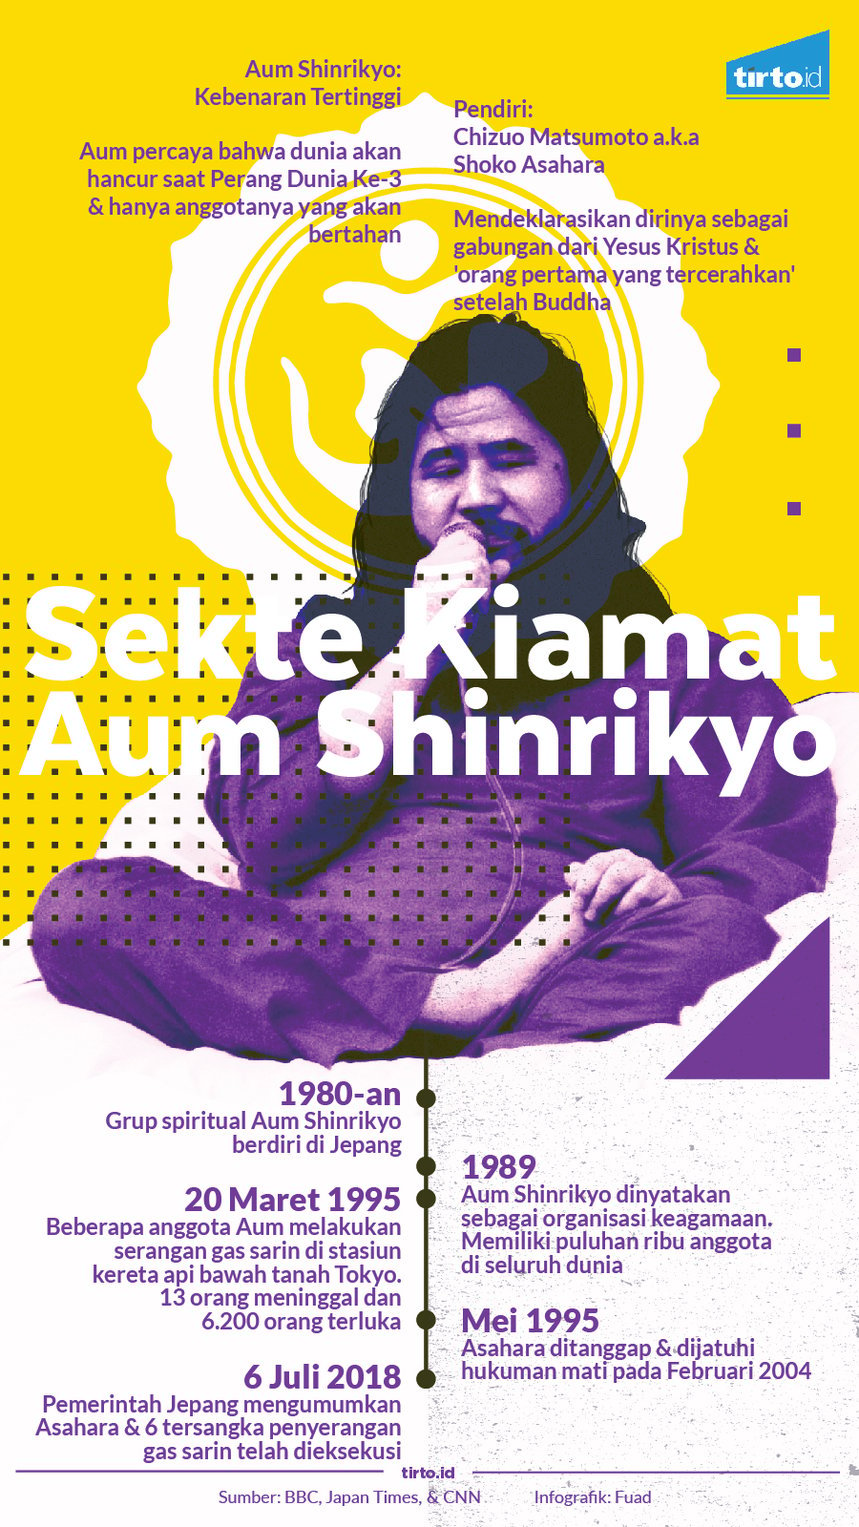 Infografik Sekte kiamat aum shinrikyo